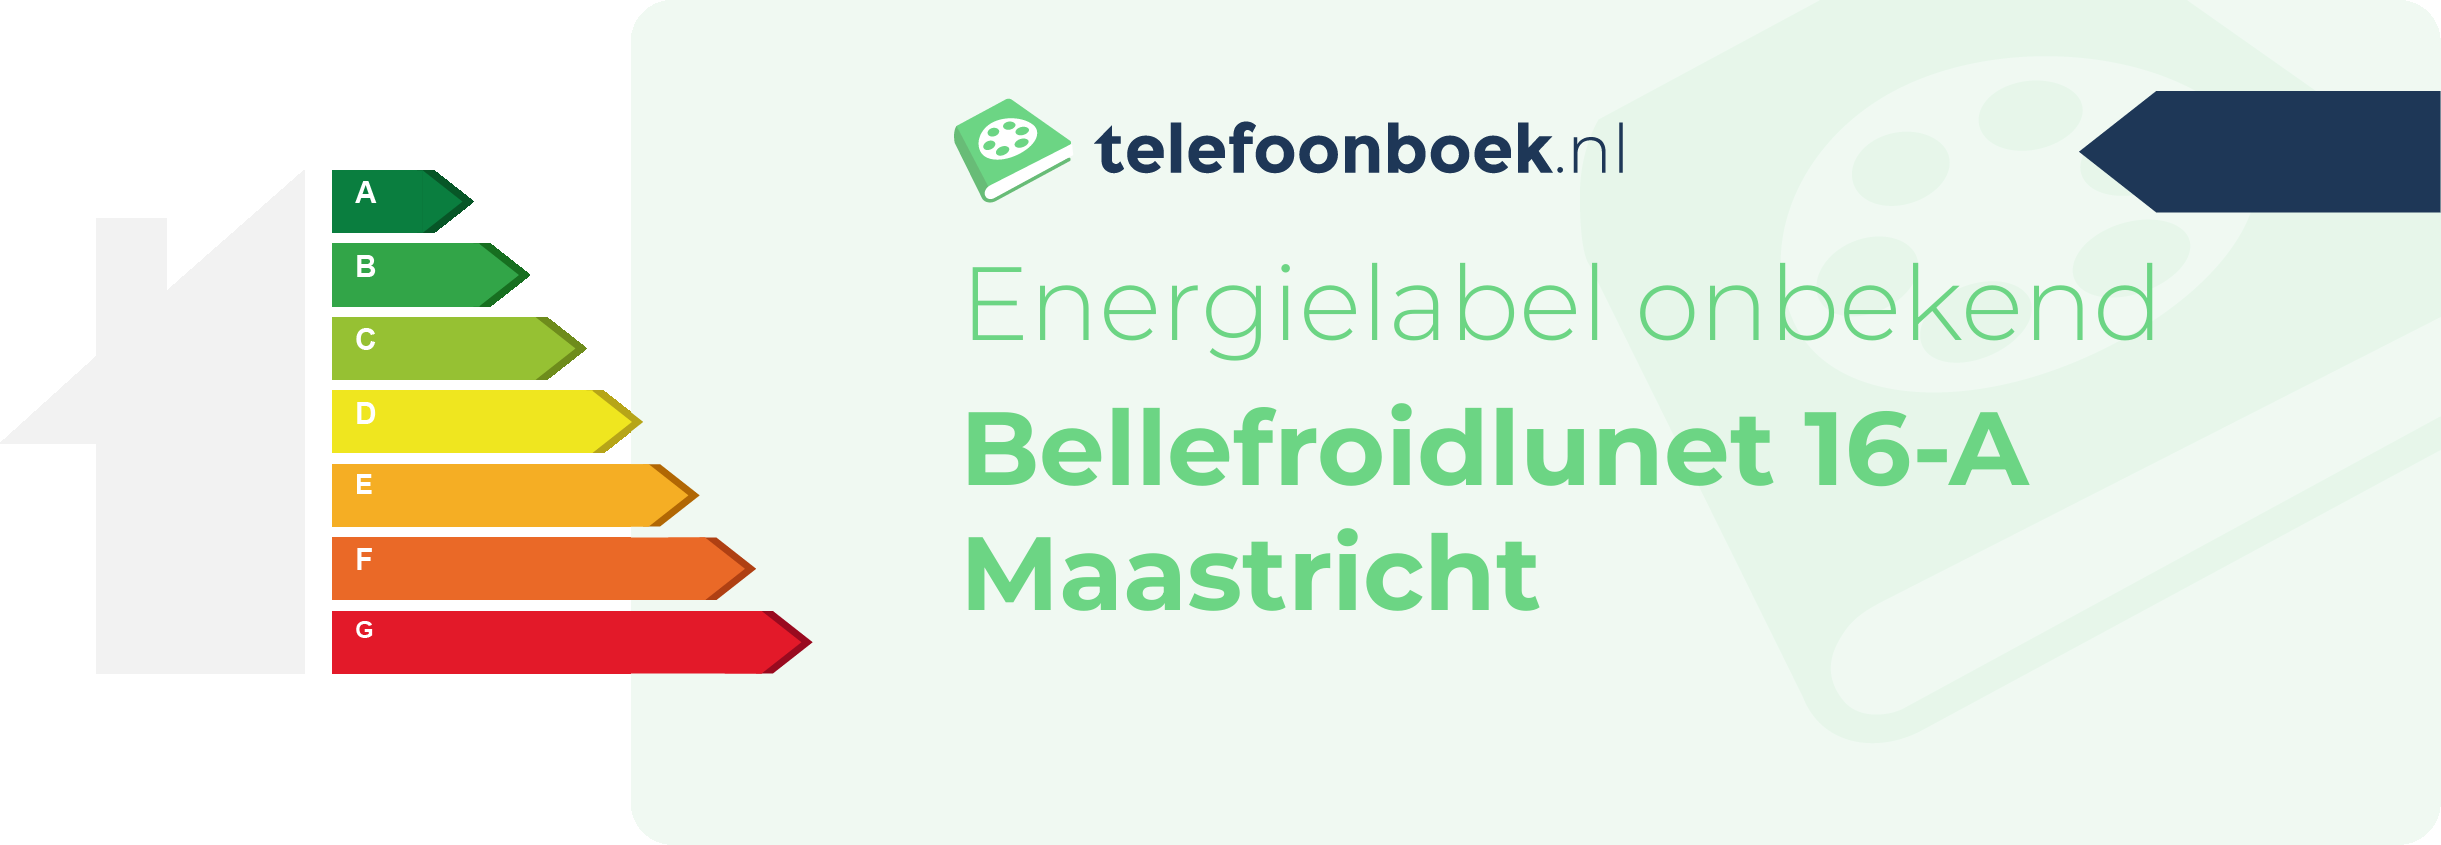 Energielabel Bellefroidlunet 16-A Maastricht